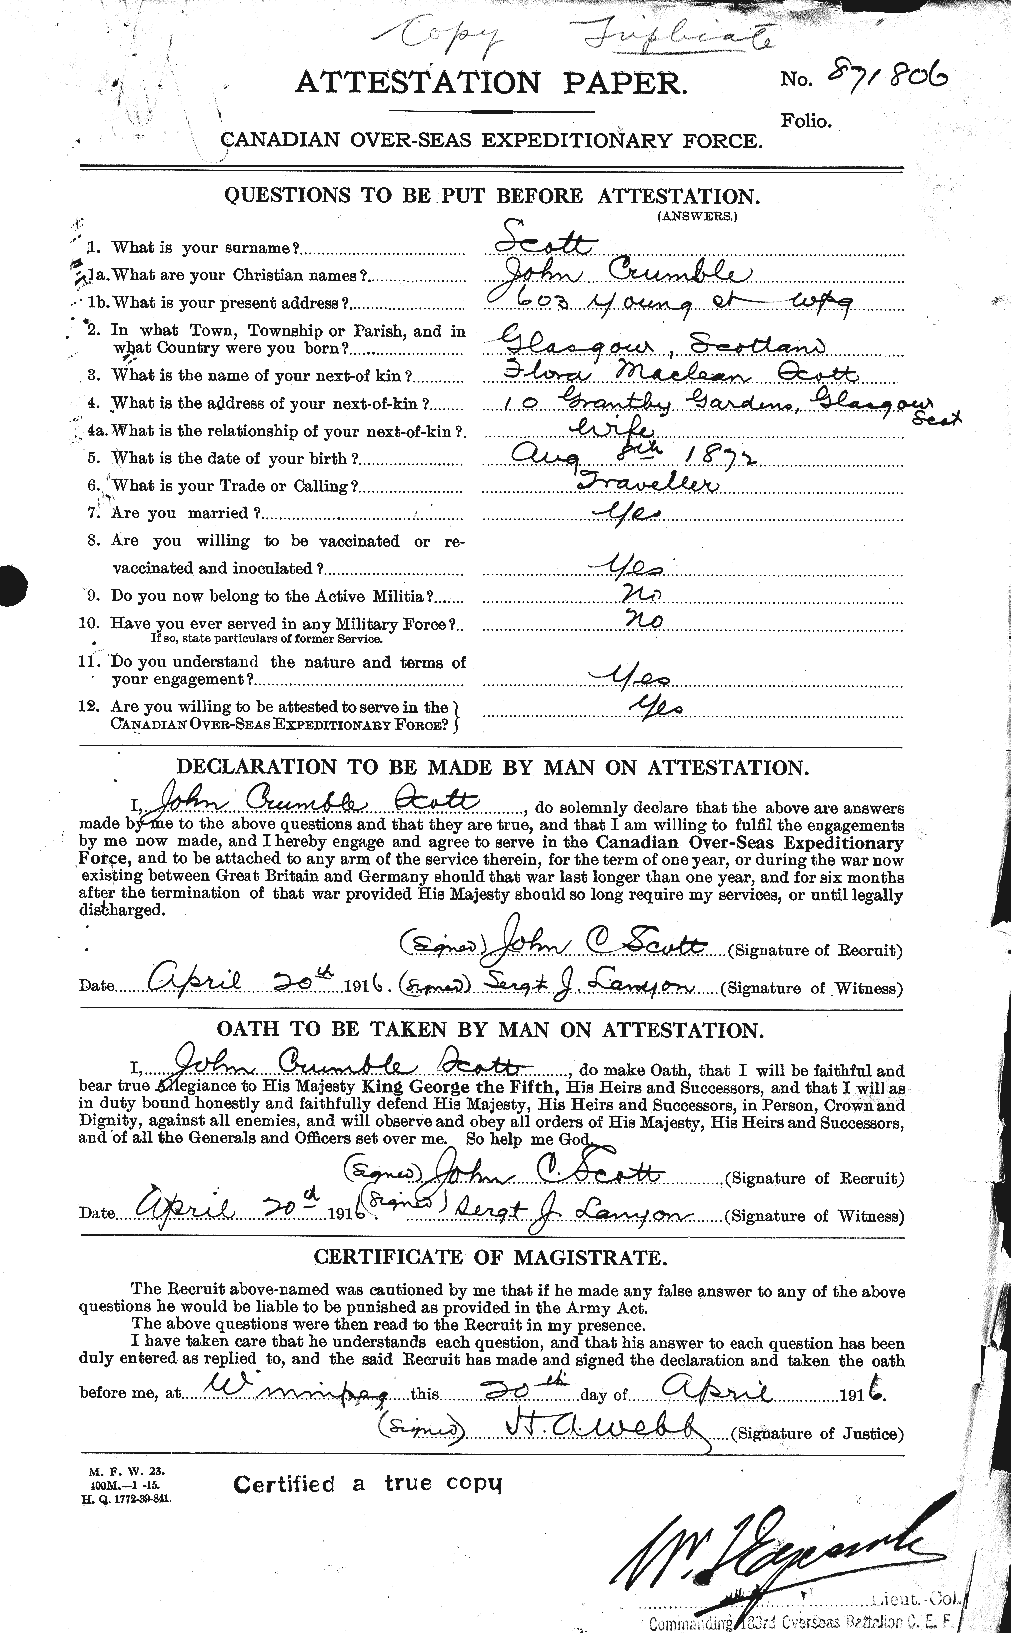 Dossiers du Personnel de la Première Guerre mondiale - CEC 084646a